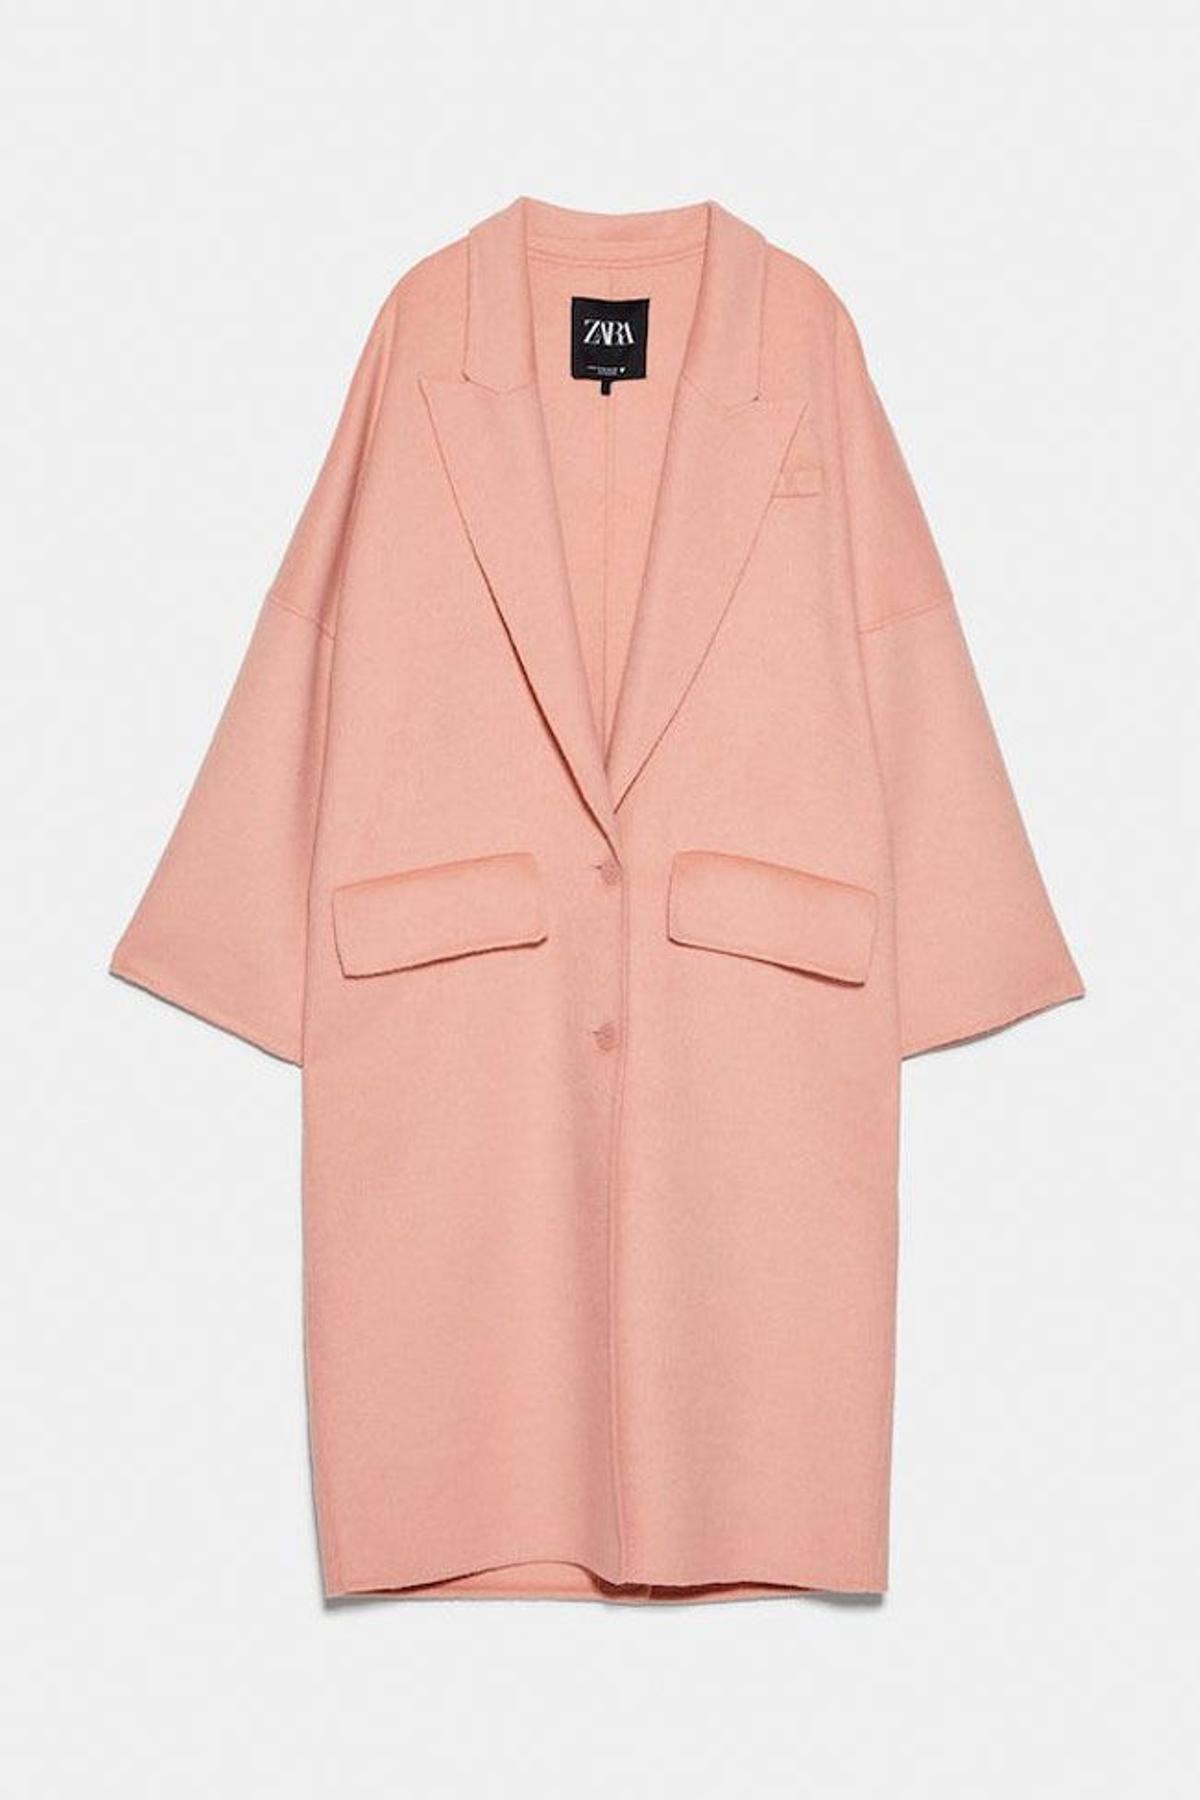 Abrigo batín XL rosa, de Zara